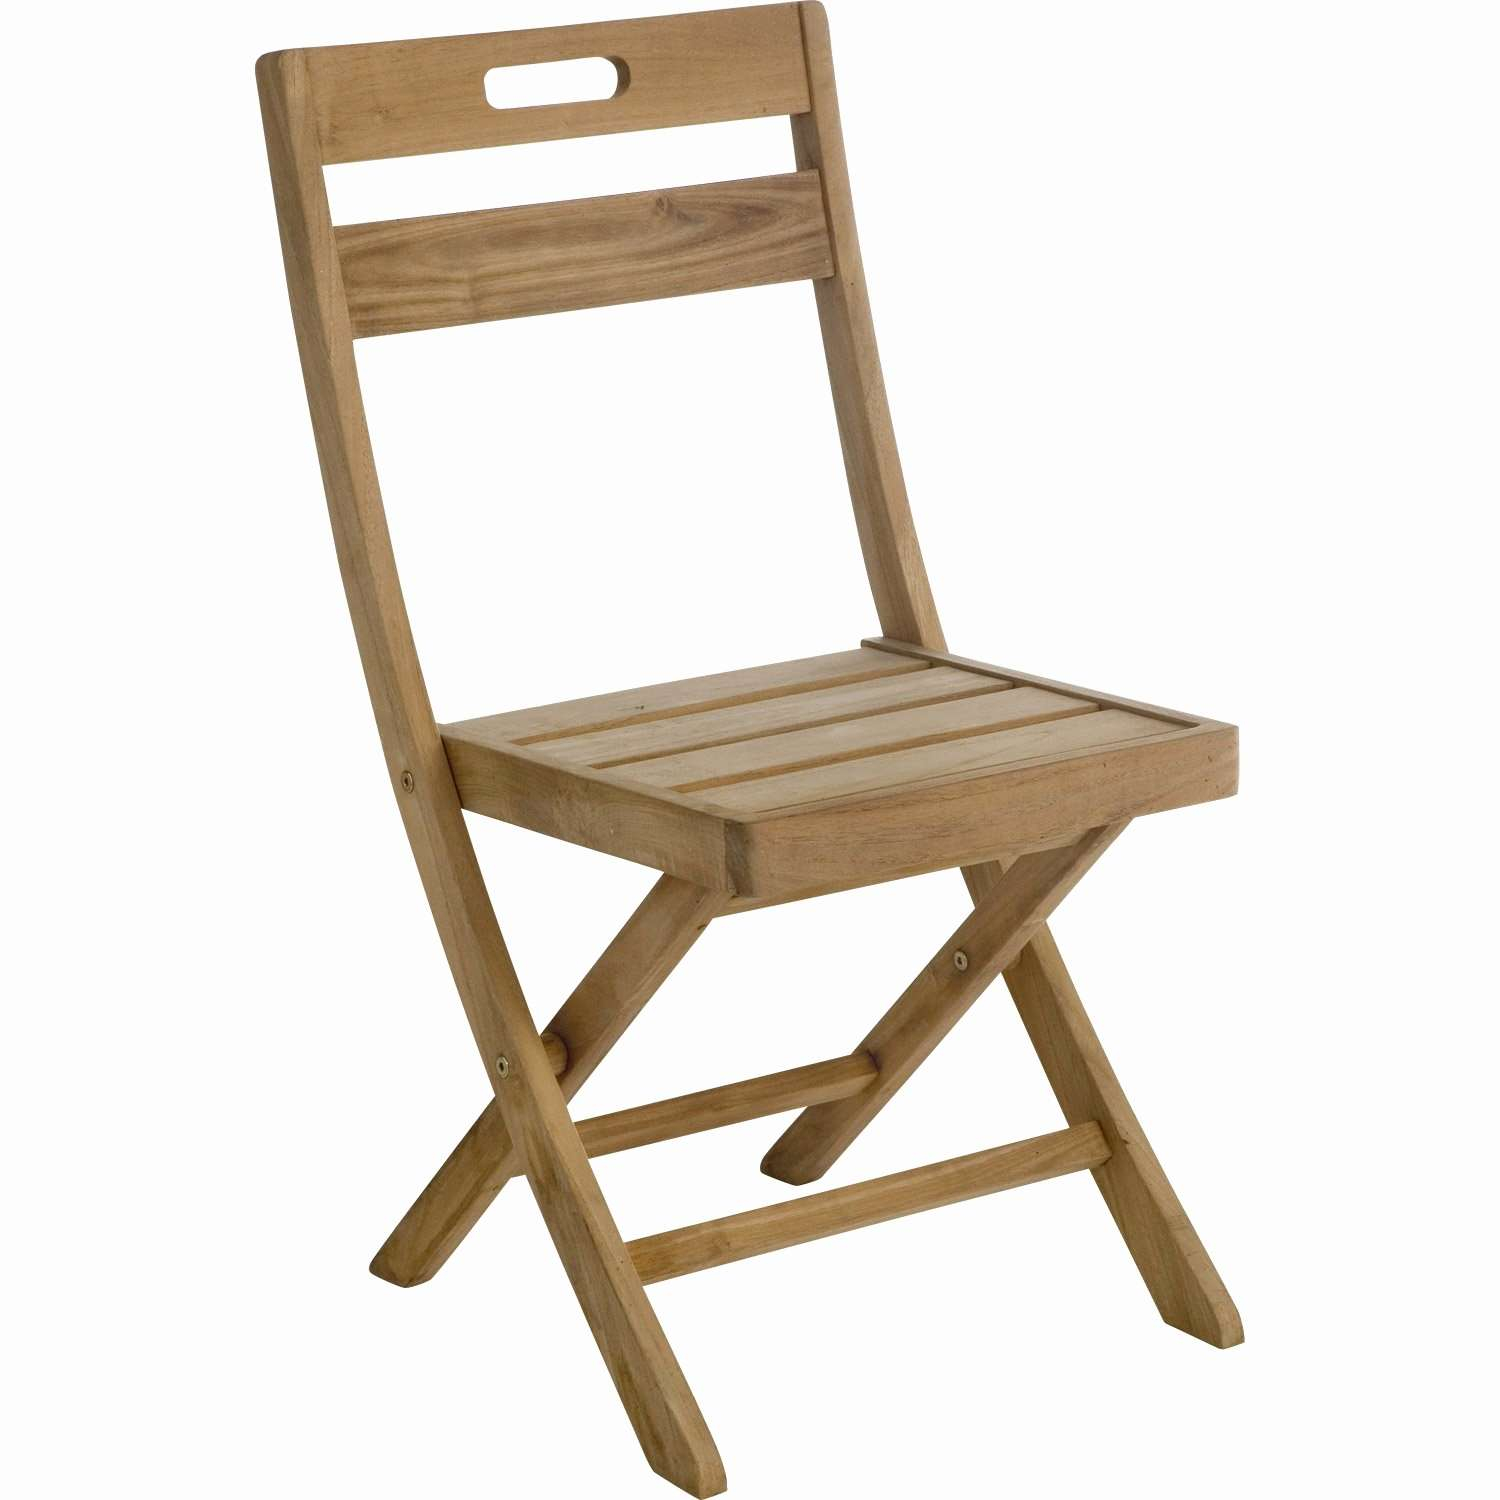 alinea chaise jardin fauteuil jardin bois best chaise jardin alinea throughout chaise de jardin alinea 1